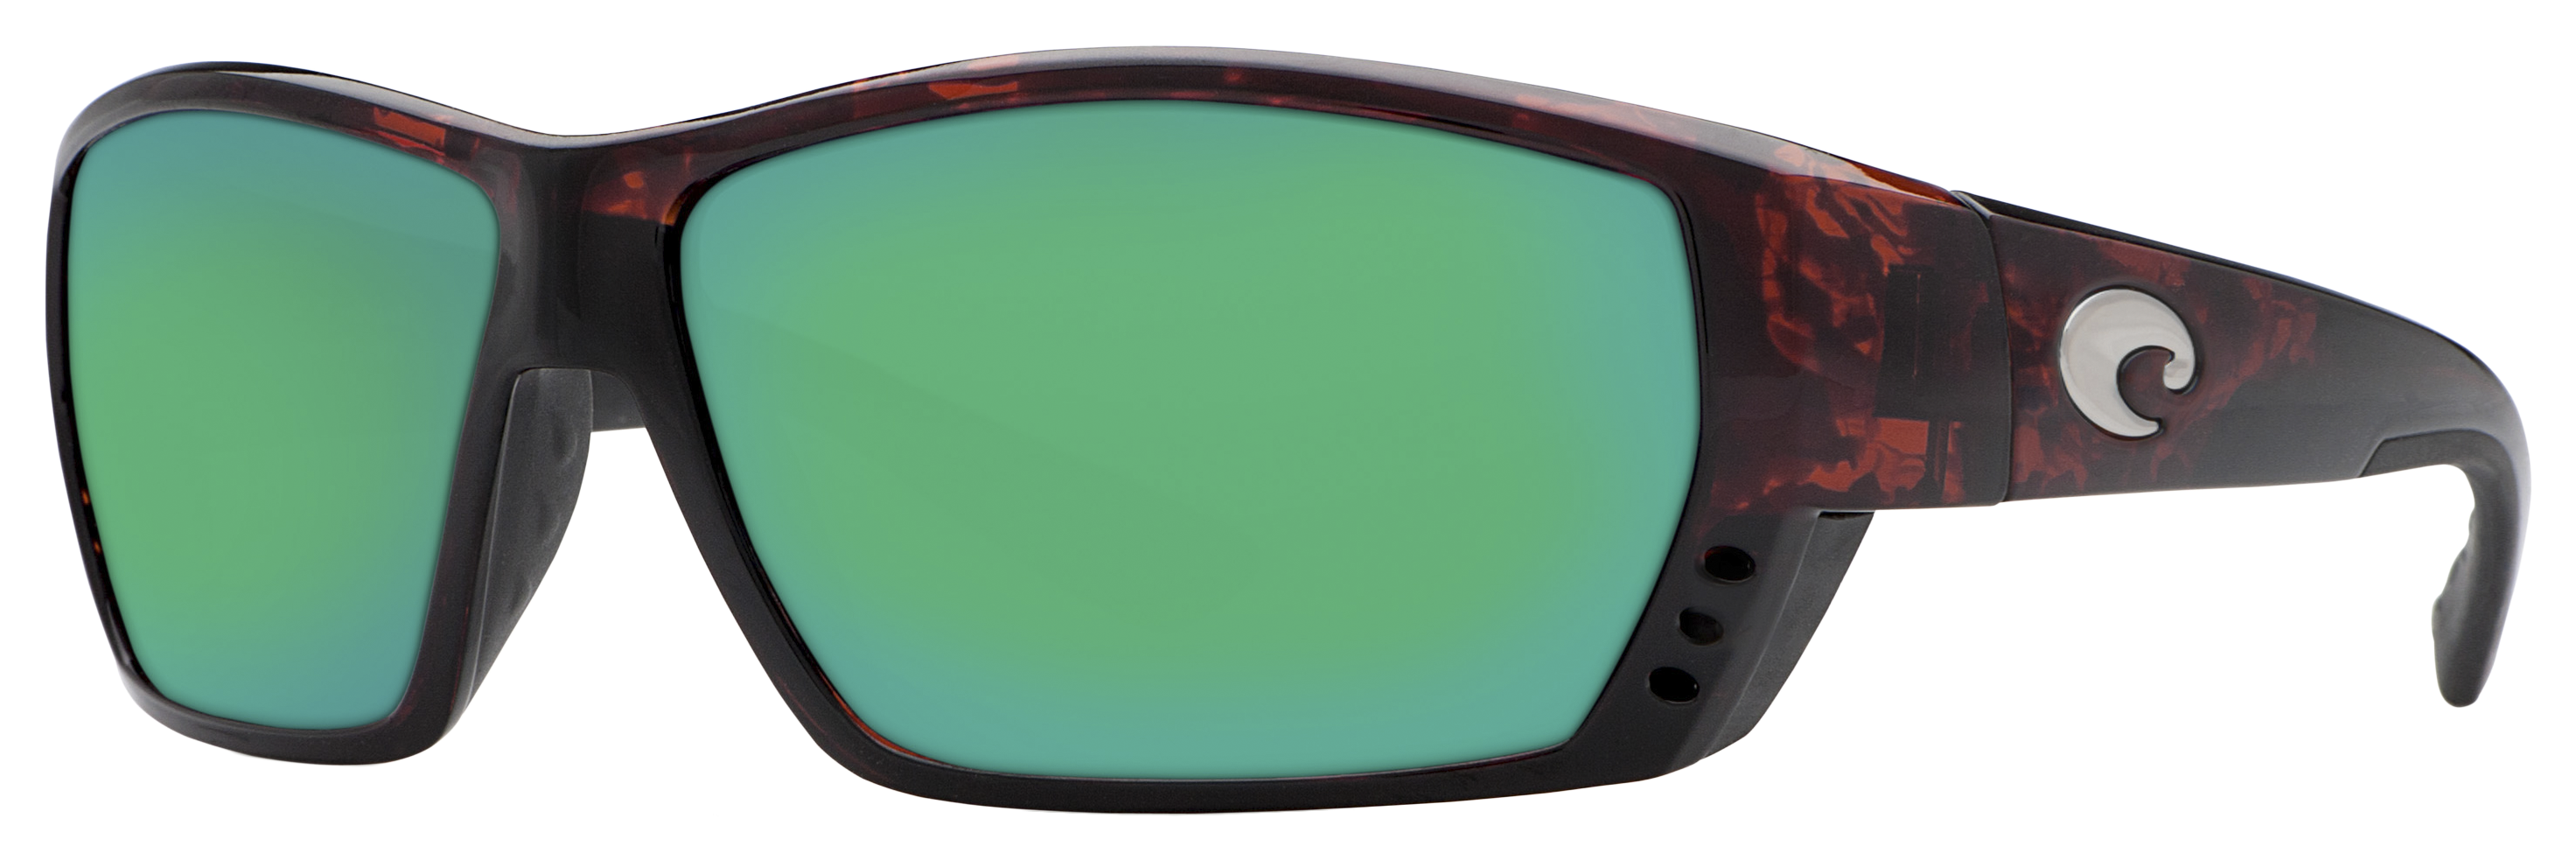 Costa Del Mar Tuna Alley Polarized Sunglasses - Tortoise/Green Mirror - X-Large